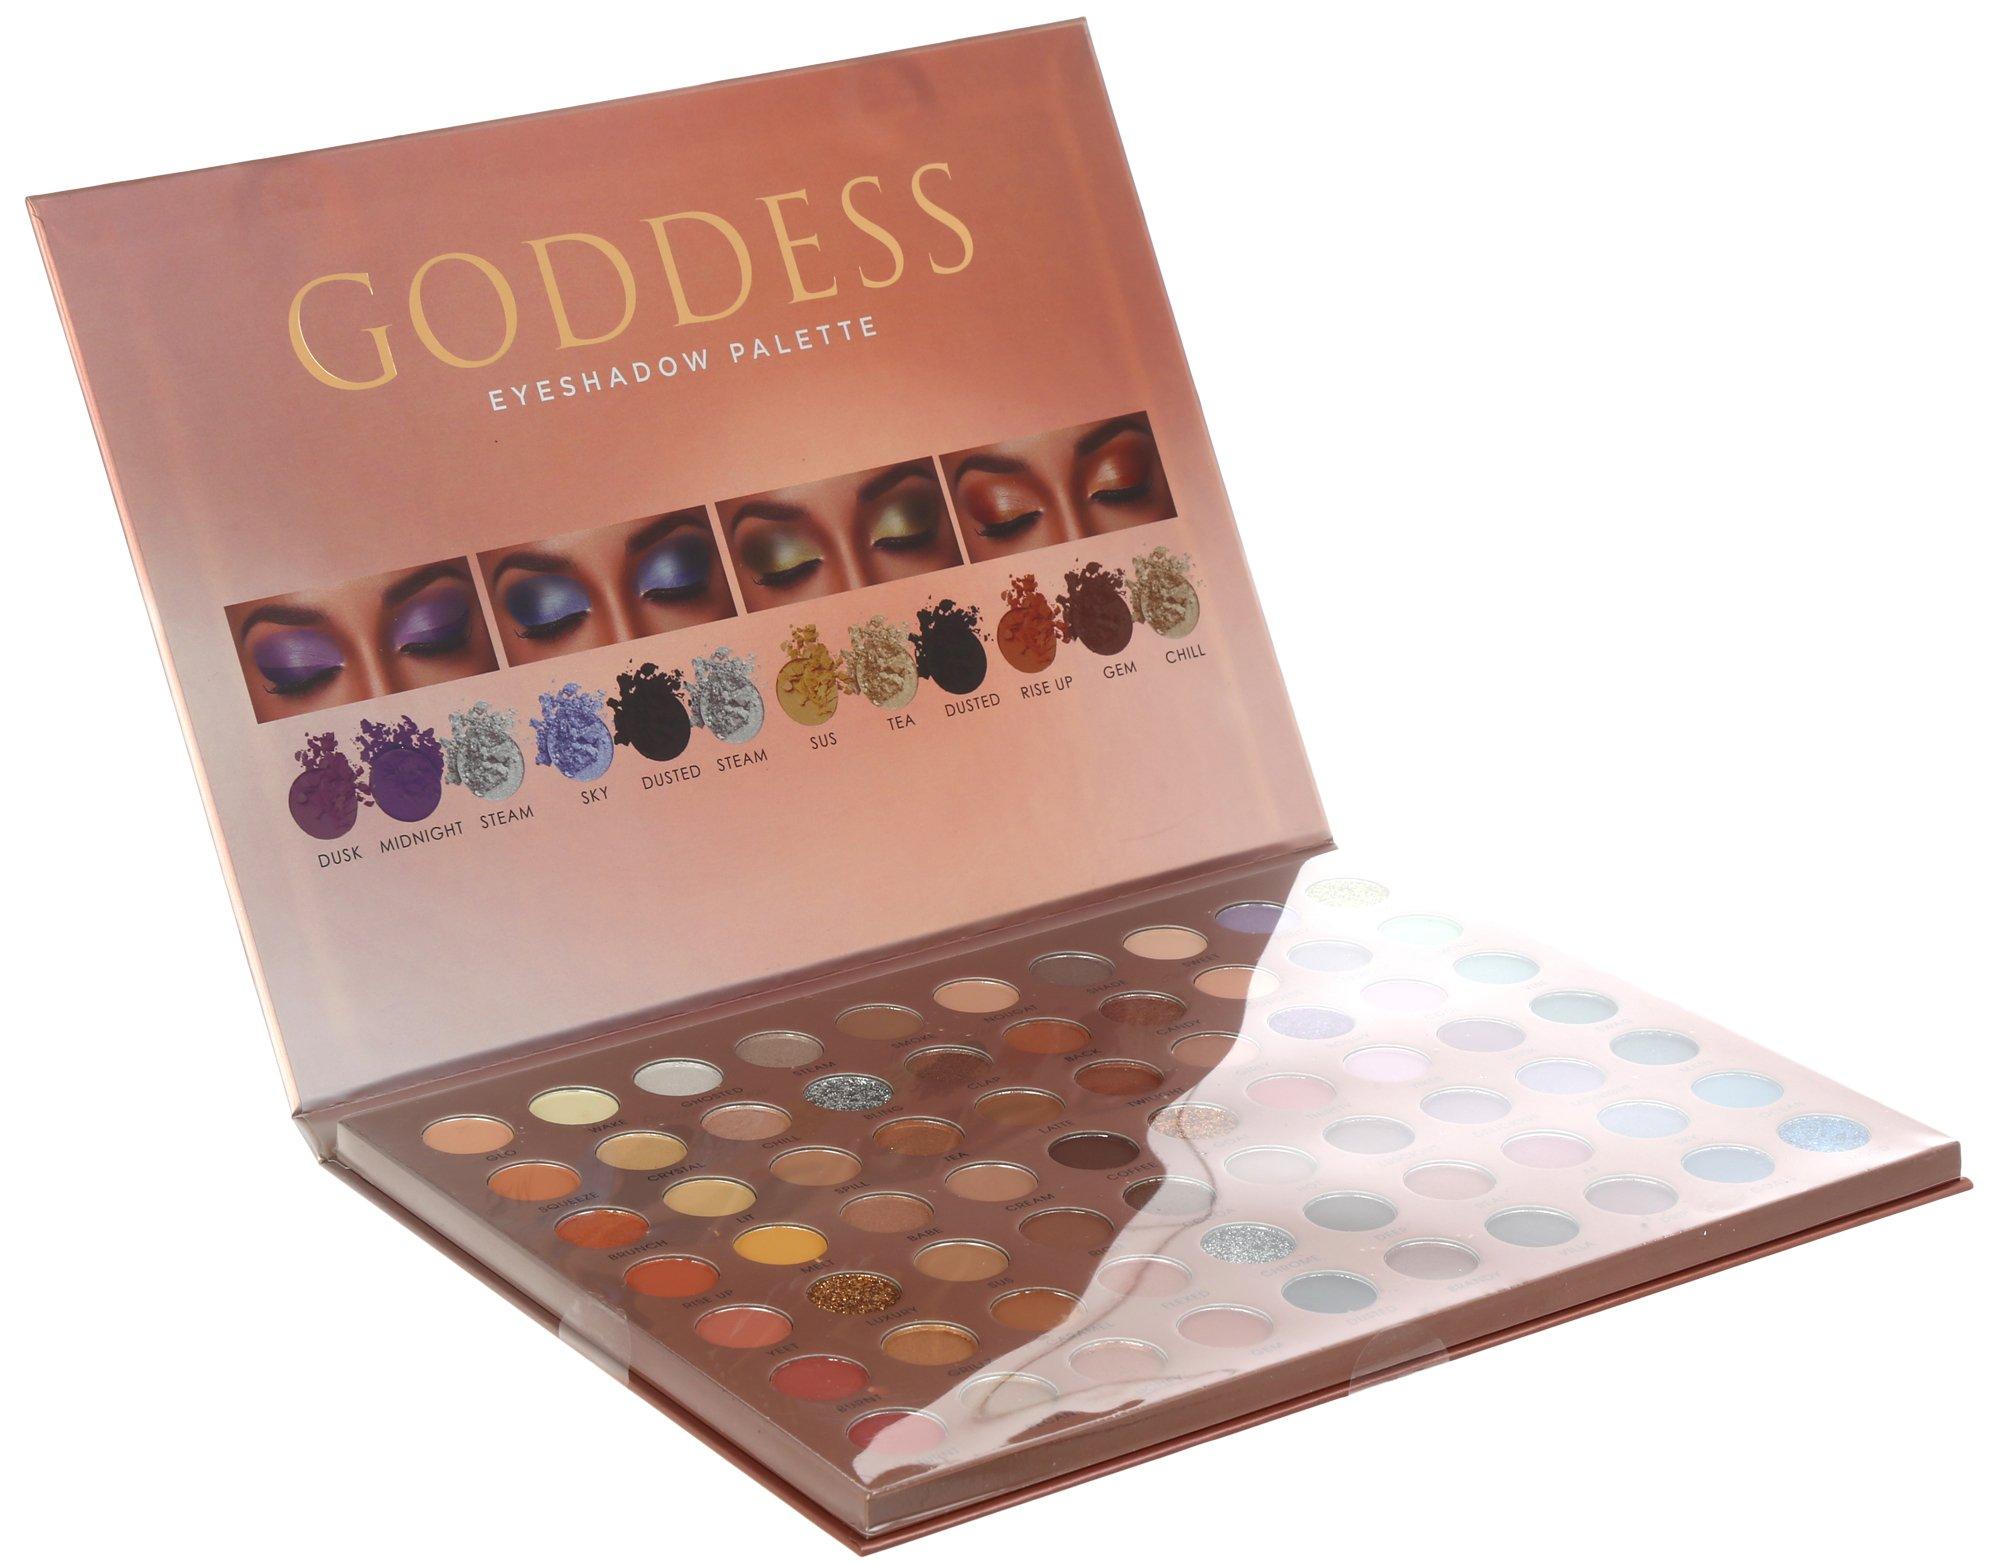 Goddess Eyeshadow Palette